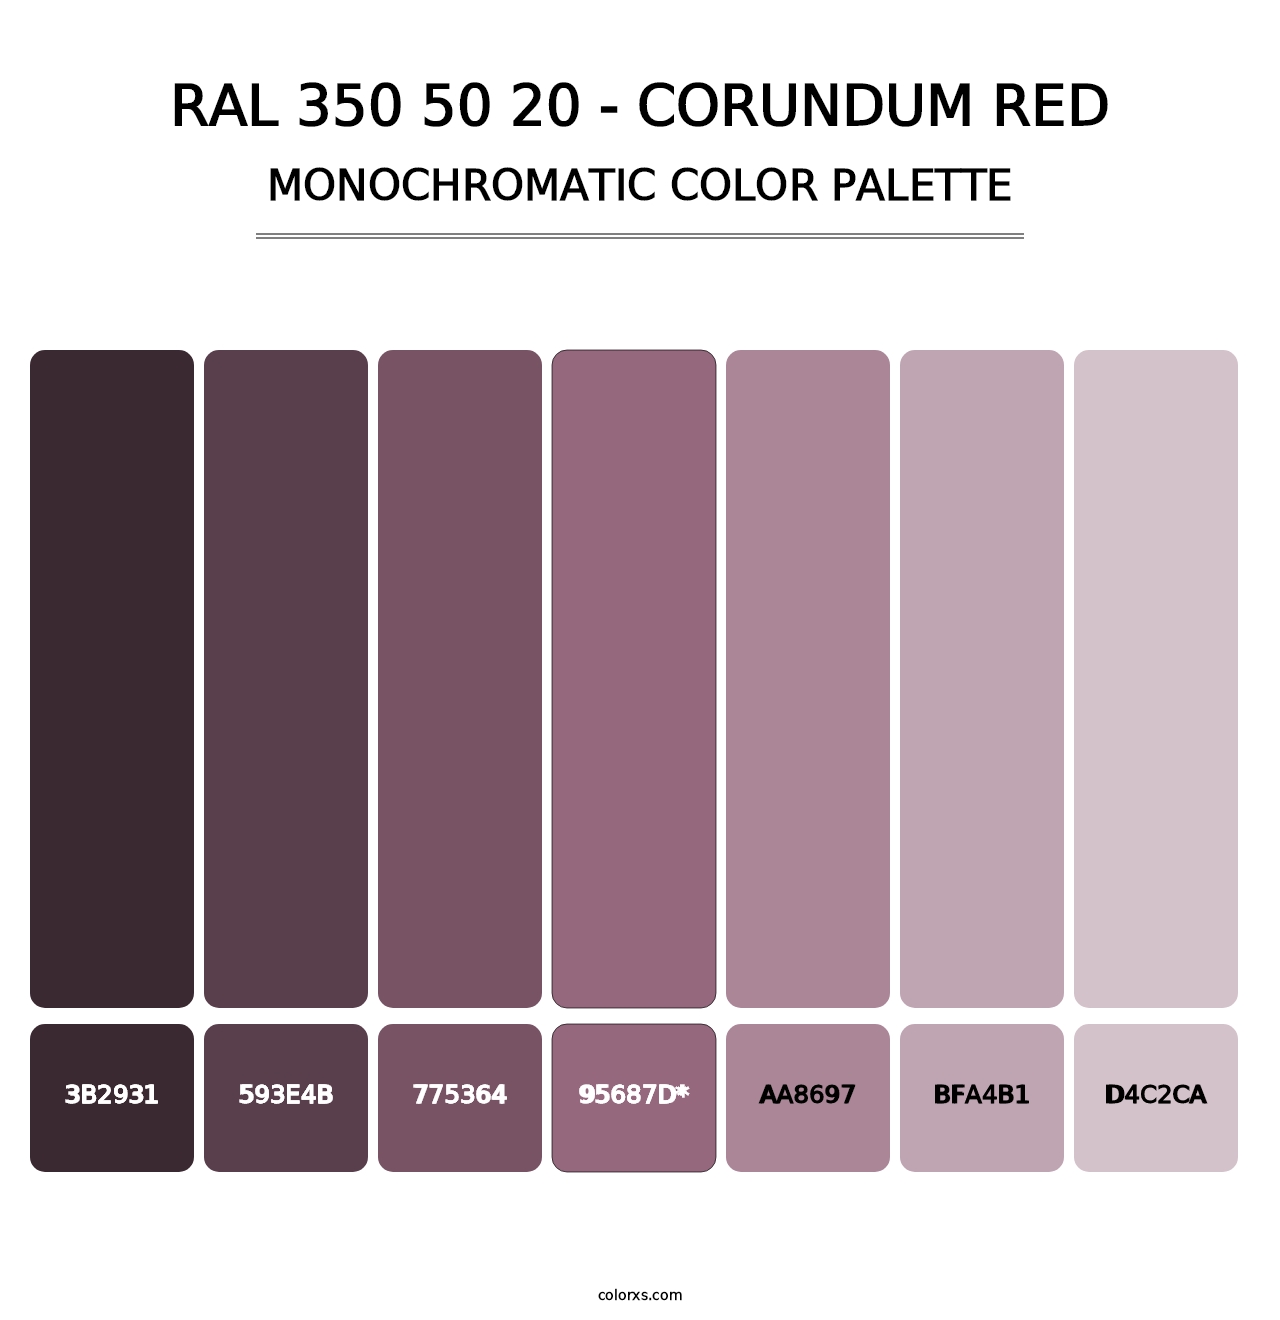 RAL 350 50 20 - Corundum Red - Monochromatic Color Palette